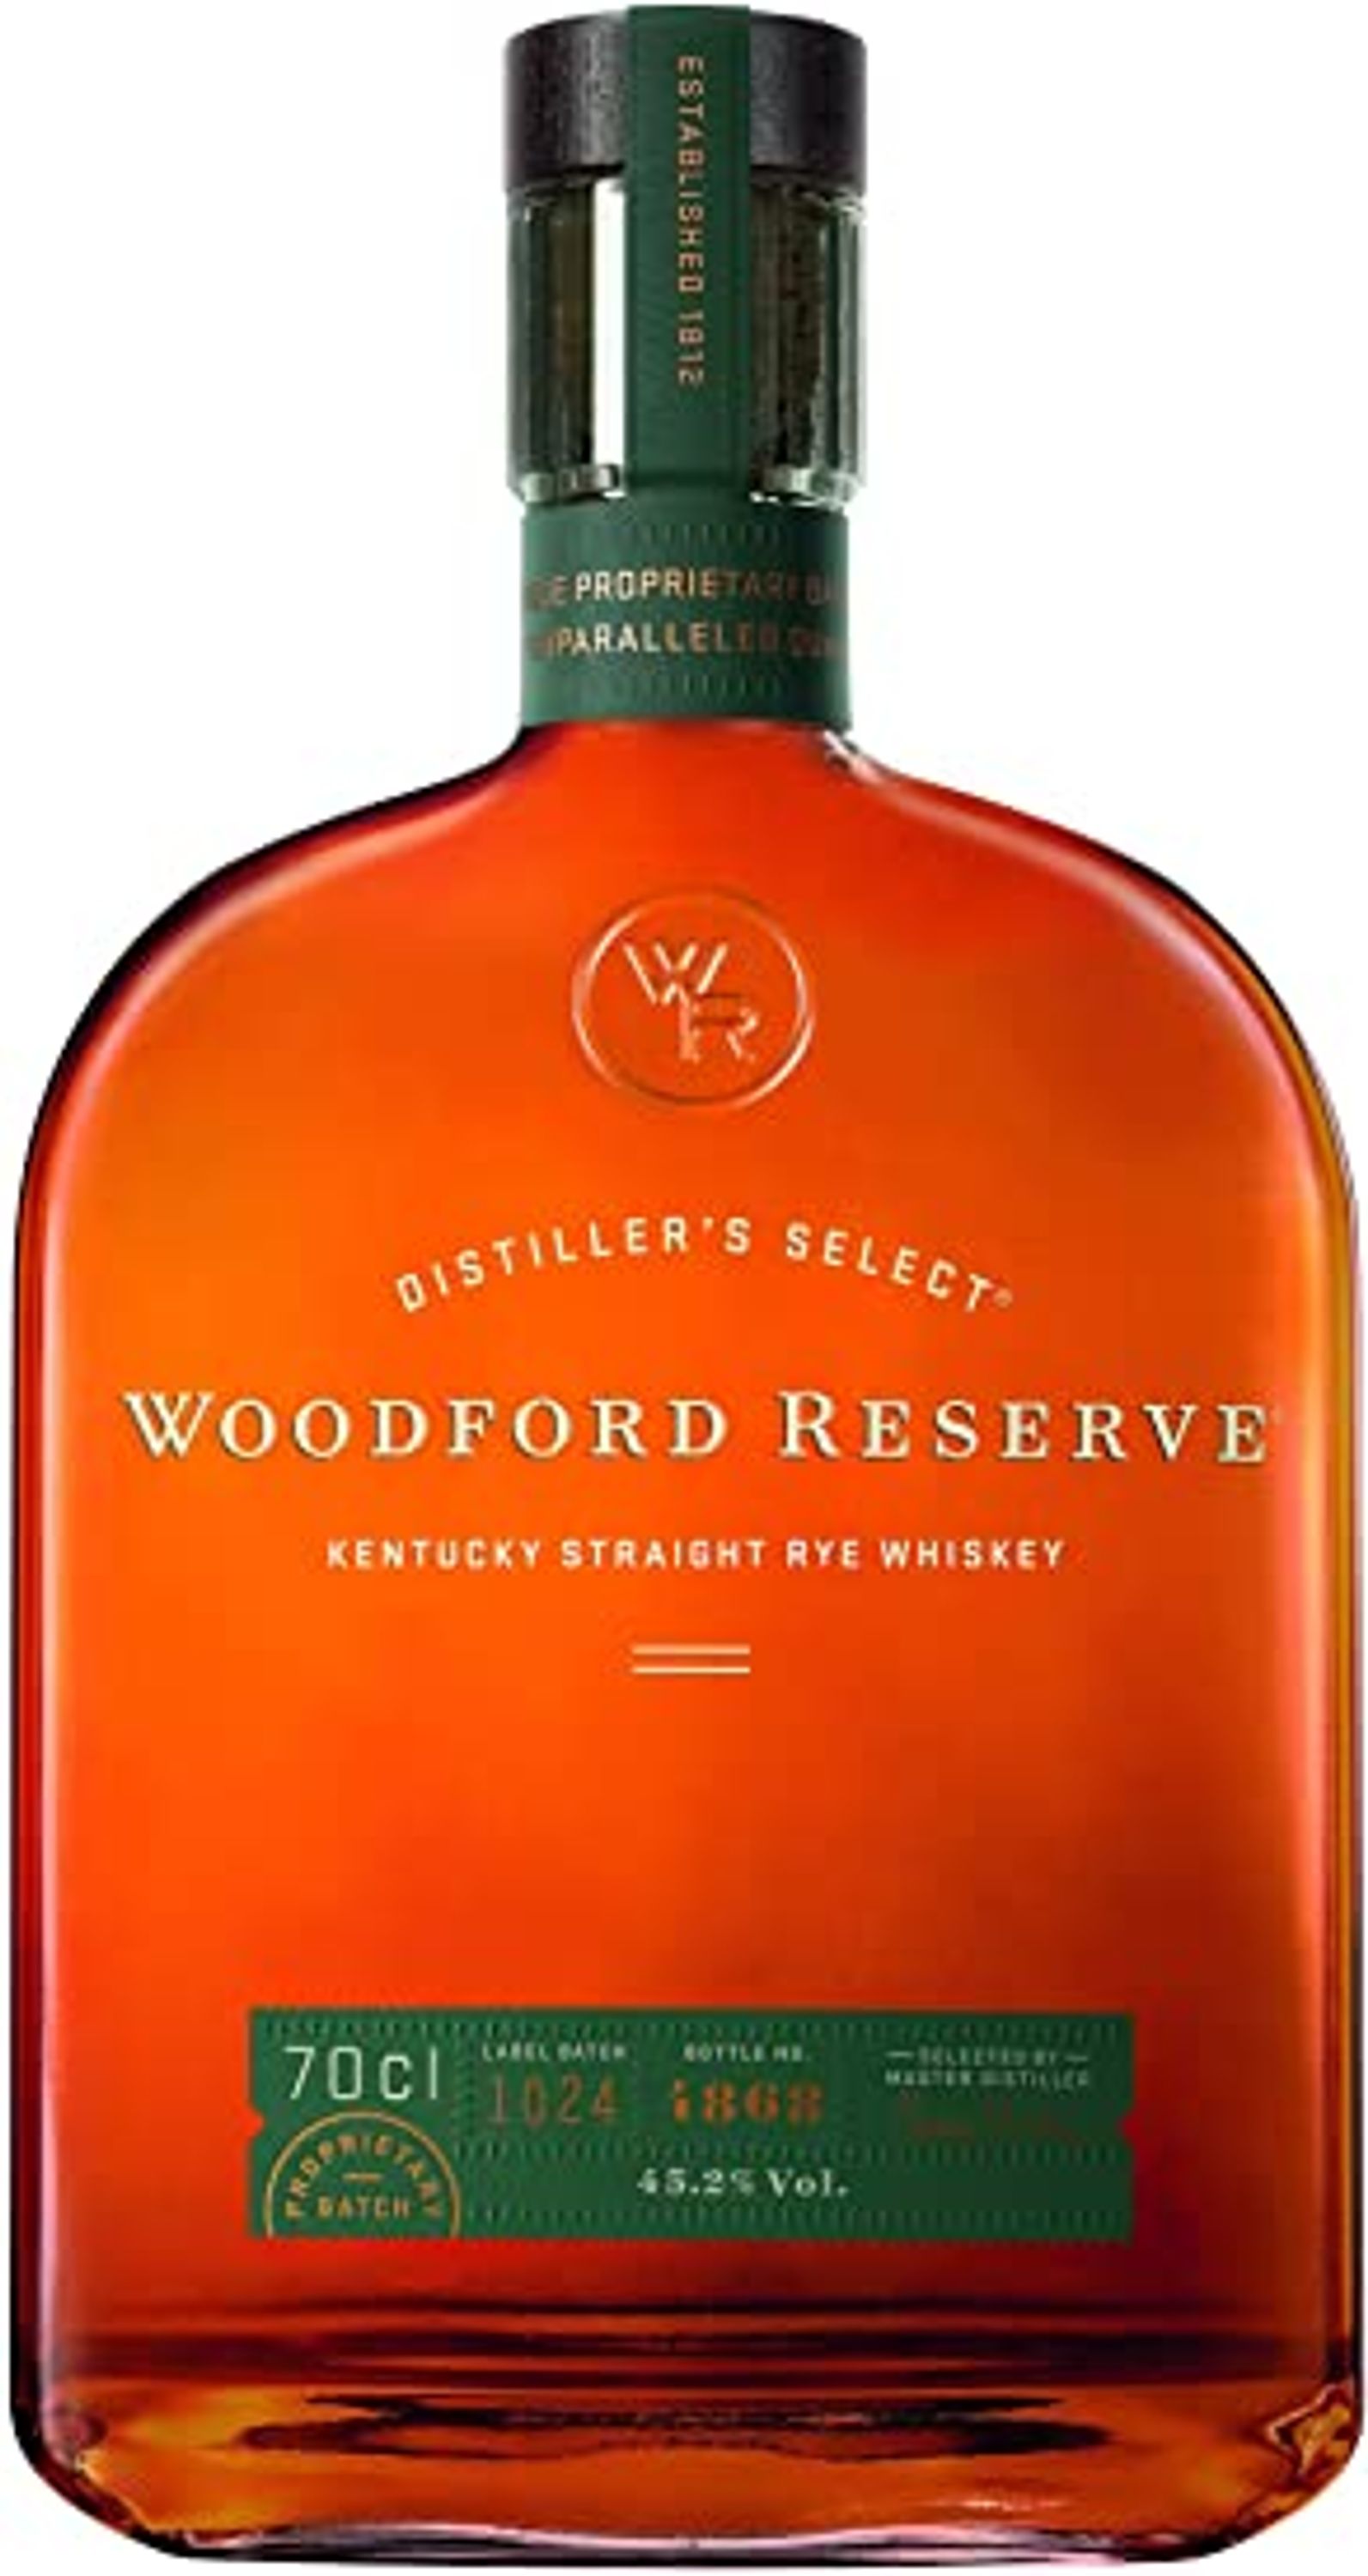 Woodford Reserve Kentucky Straight Rye Whisky 0,7l, alk. 45,2 tilavuusprosenttia.